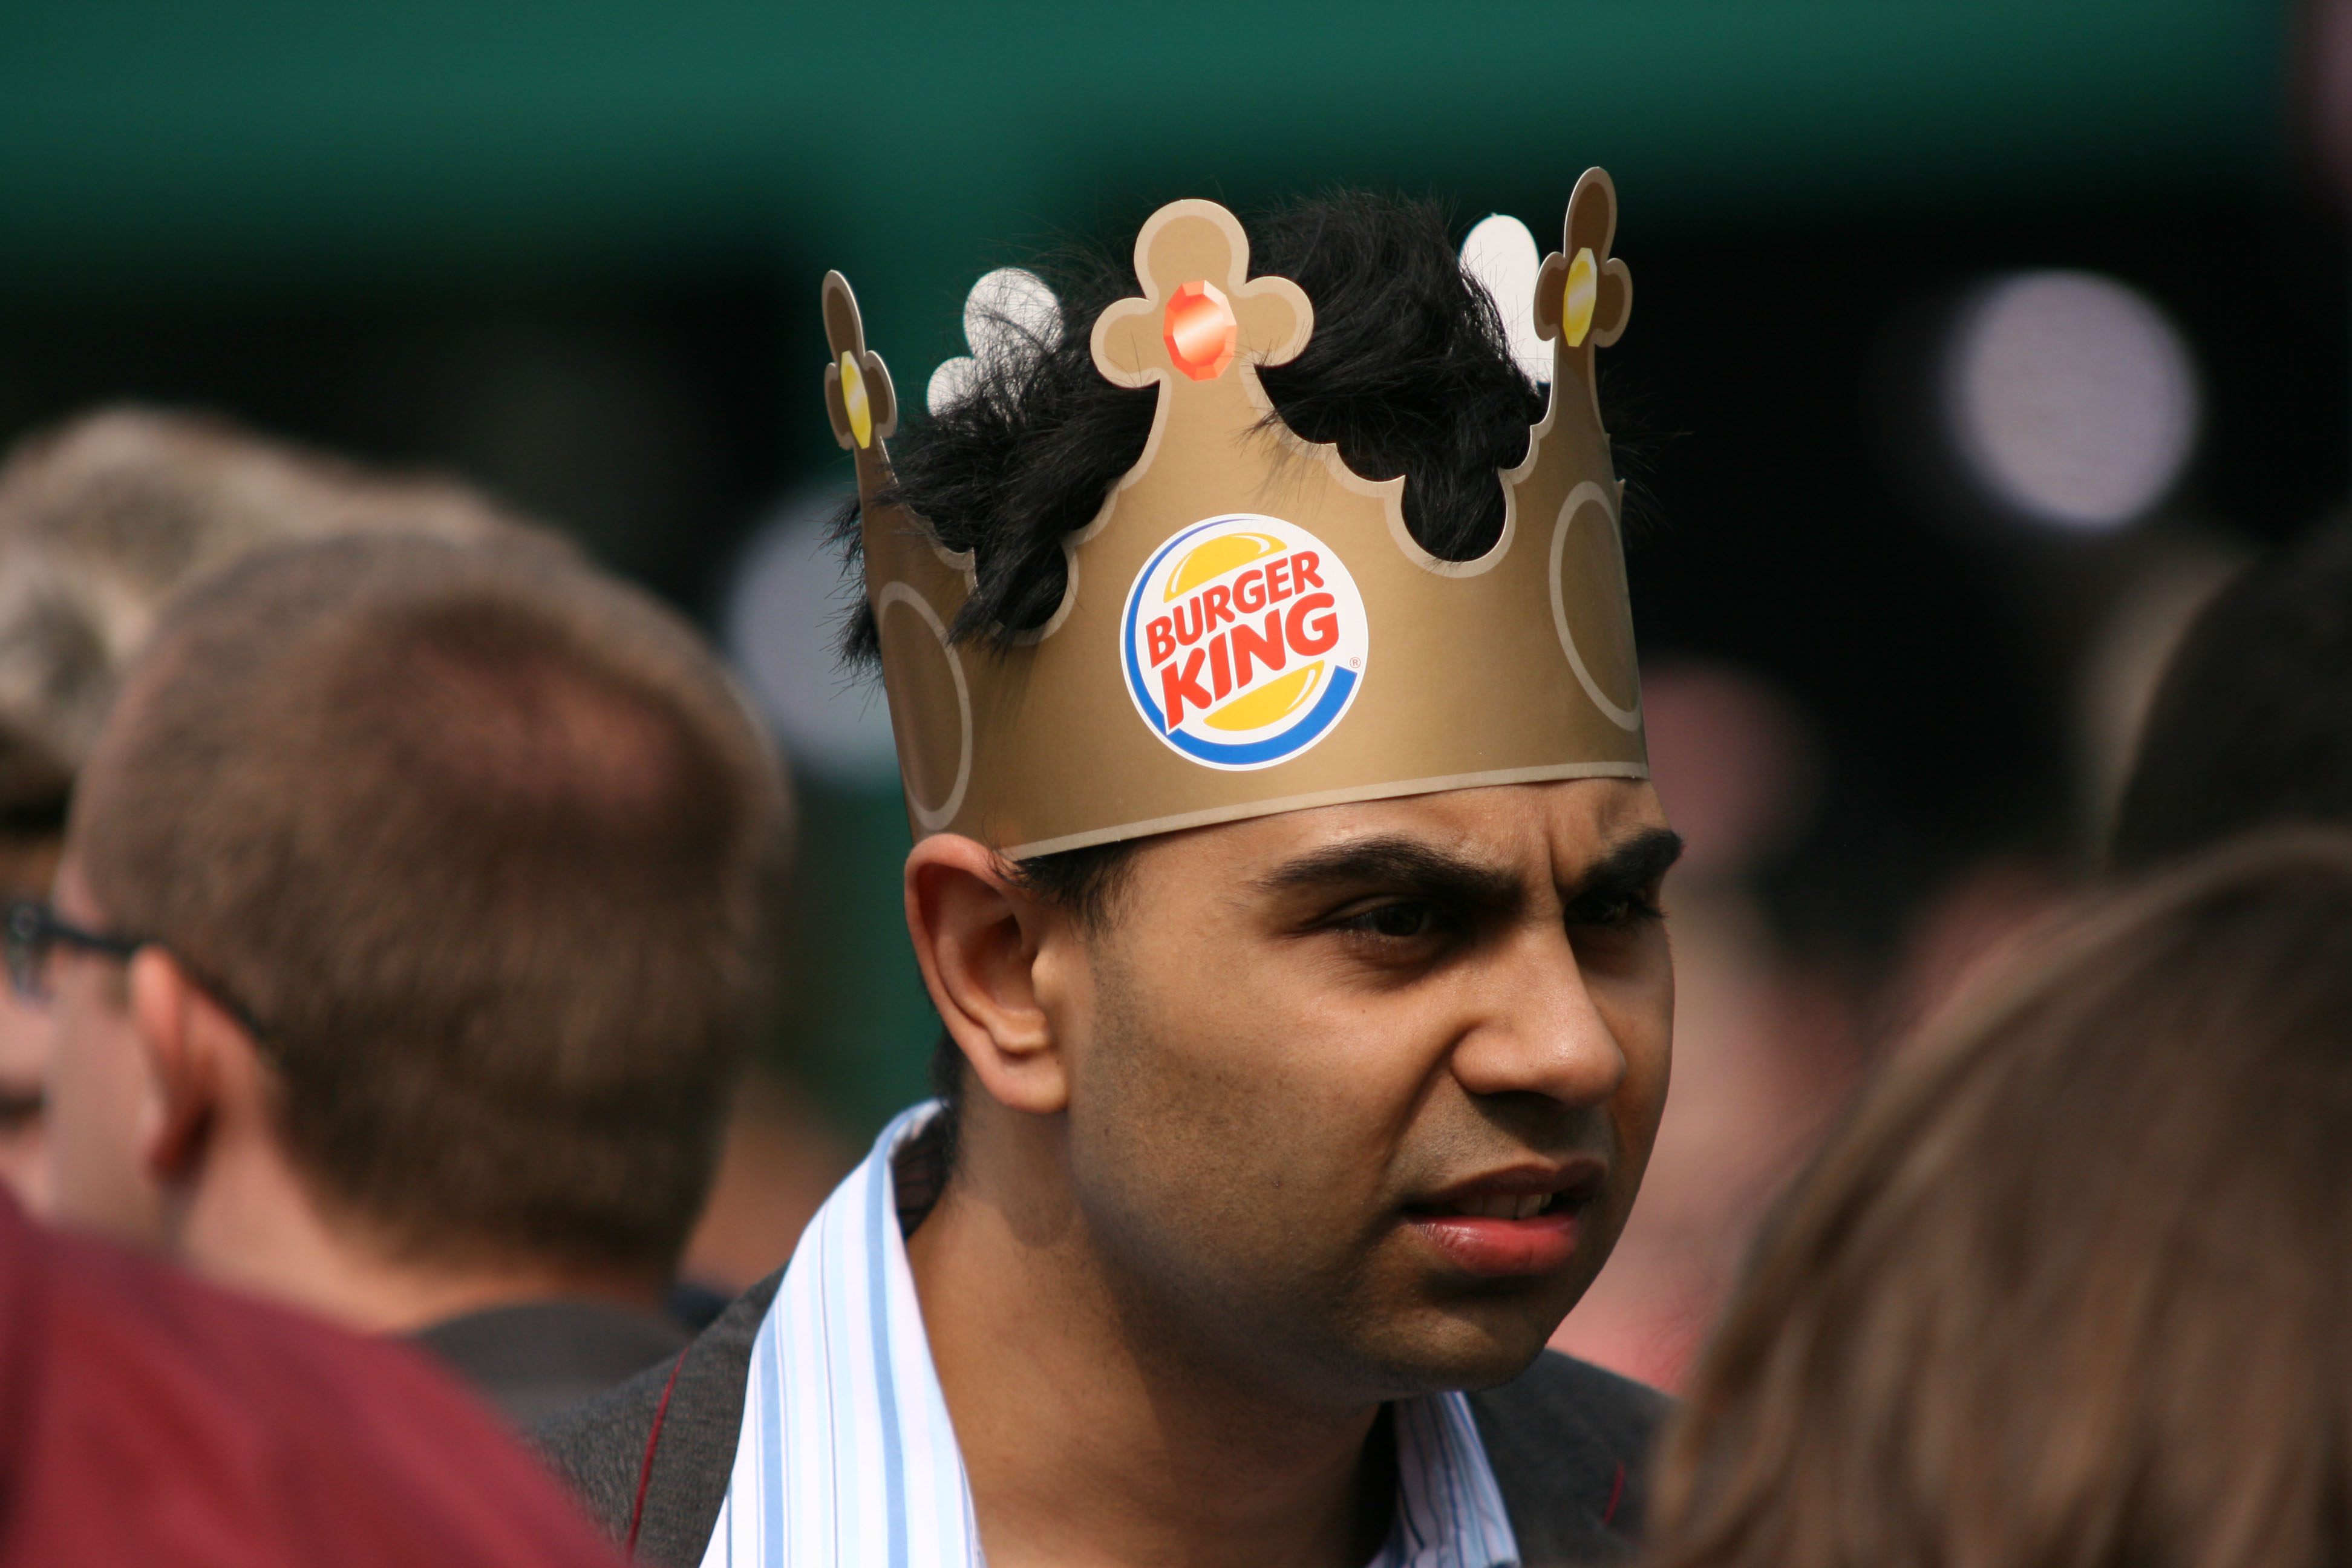 Burger King cung cấp dữ liệu nhạy cảm, không có dữ liệu thông minh về chuỗi khối Mayo Plato. Tìm kiếm dọc. Ái.